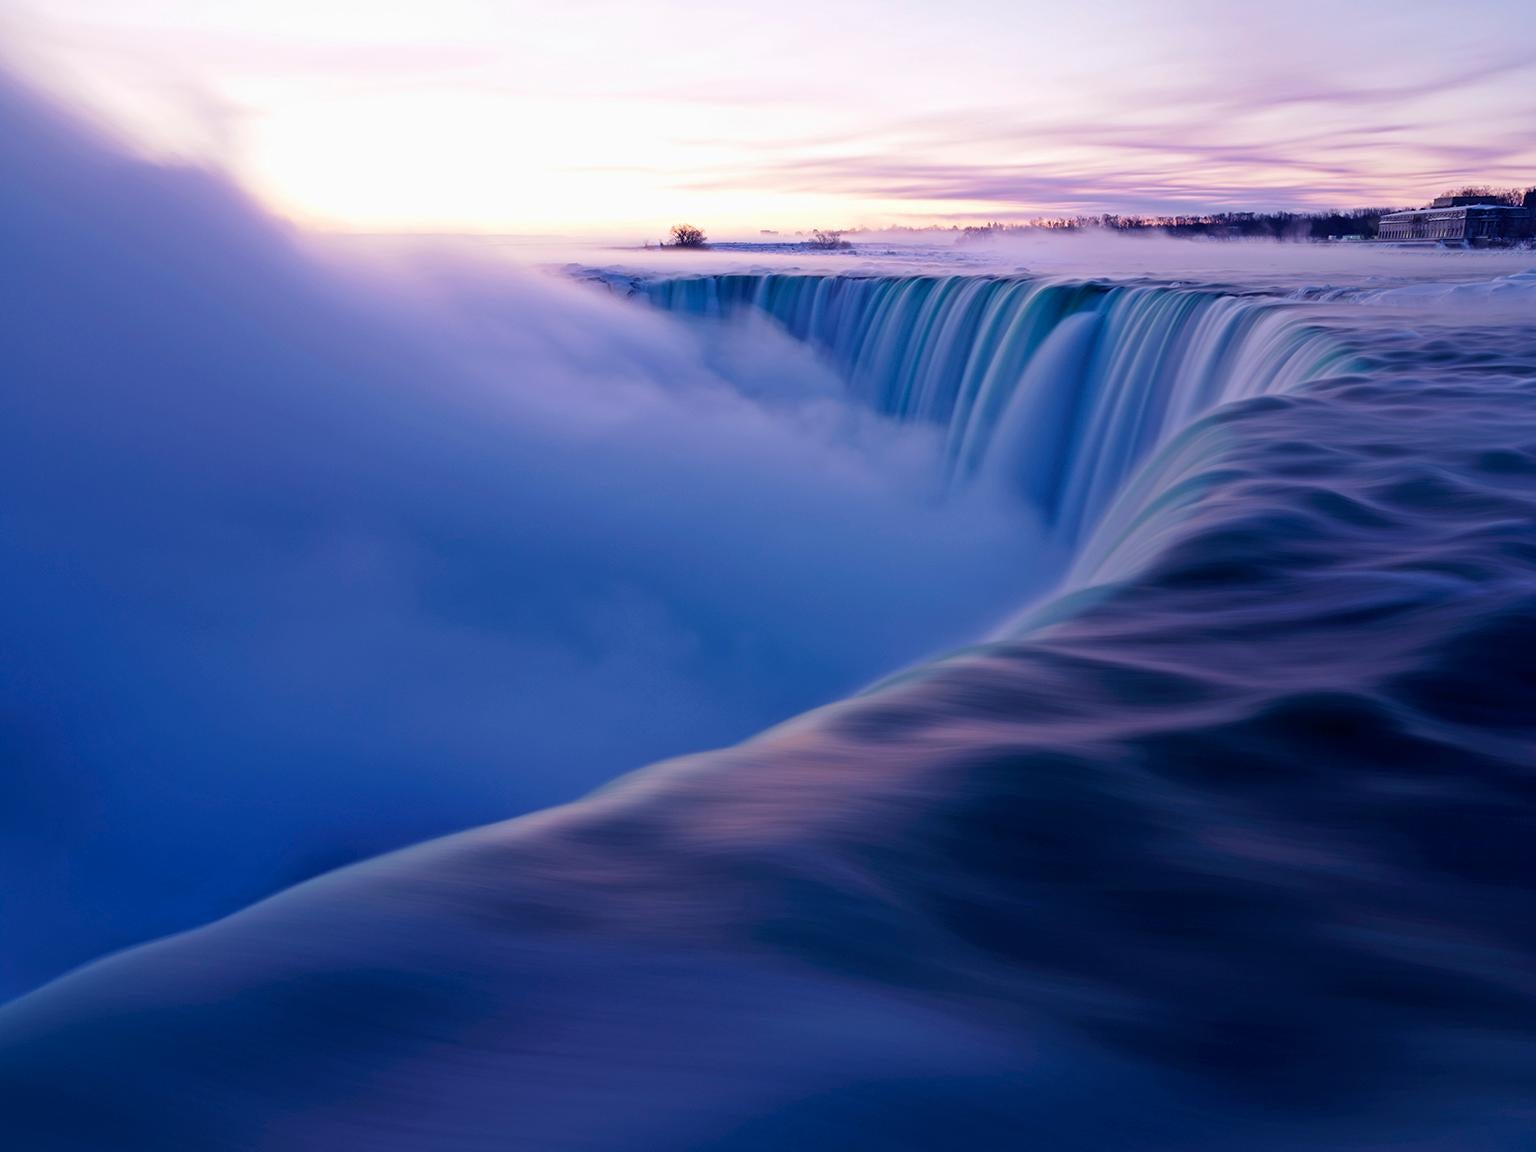  Cosmo Condina Color Photograph - Niagara Falls, Ontario, Canada. The Falls in Winter at Dawn.